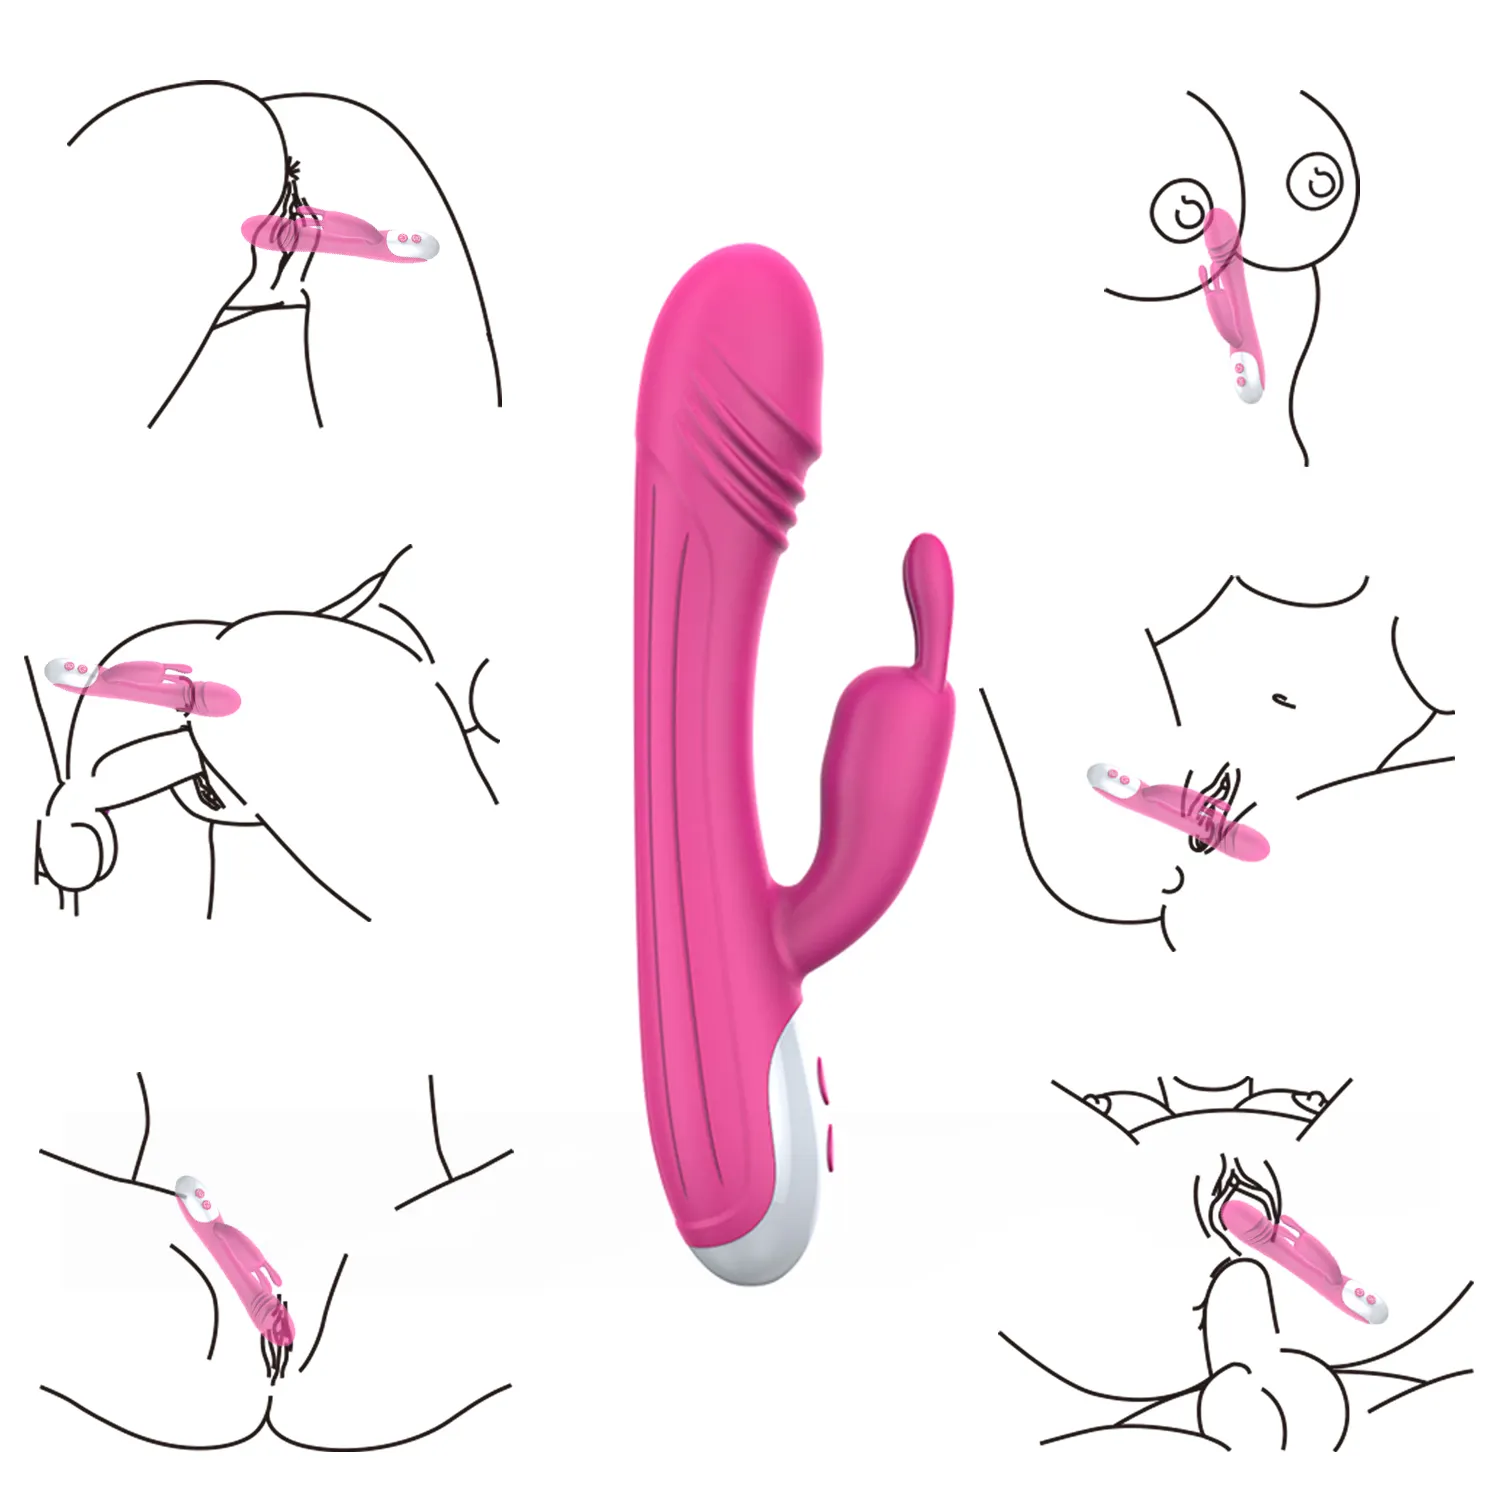 Venta caliente 7mods vibraciones 2 motor vibrador punto G conejo estimulador del clítoris masajeador recargable mujer adulto juguete sexual